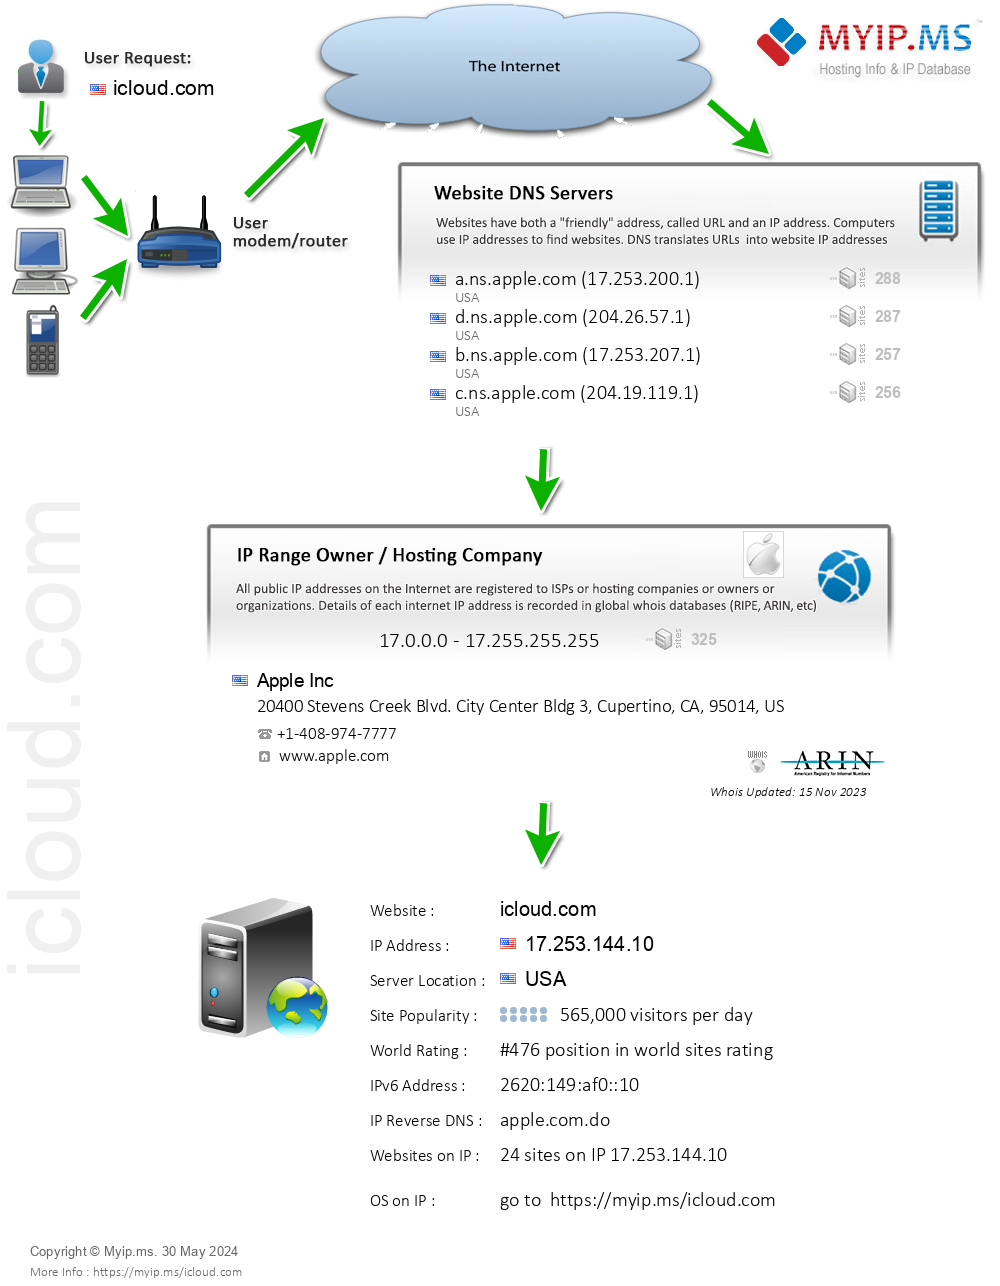 Icloud.com - Website Hosting Visual IP Diagram